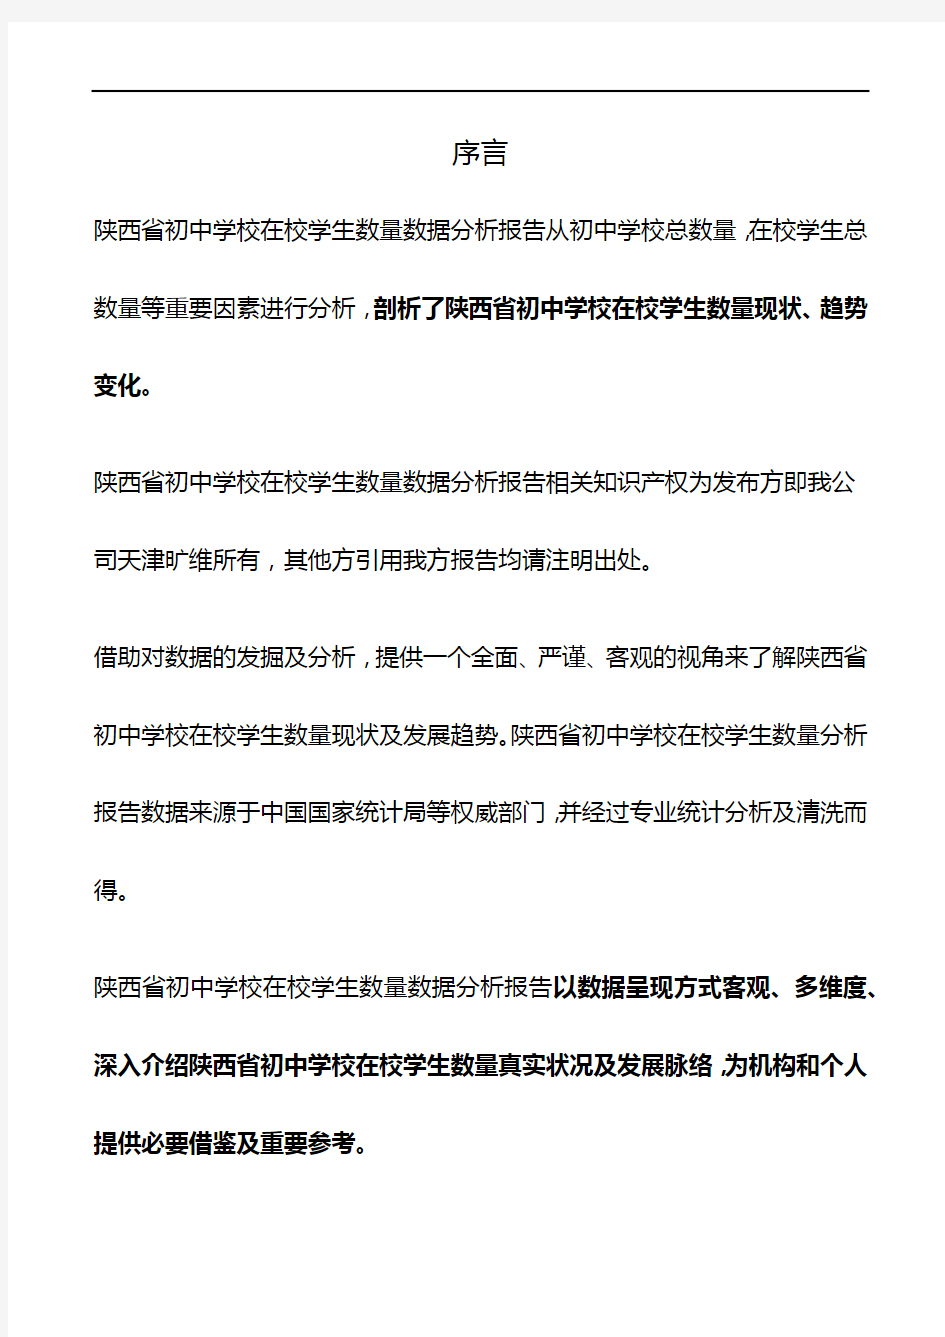 陕西省初中学校在校学生数量数据分析报告2019版